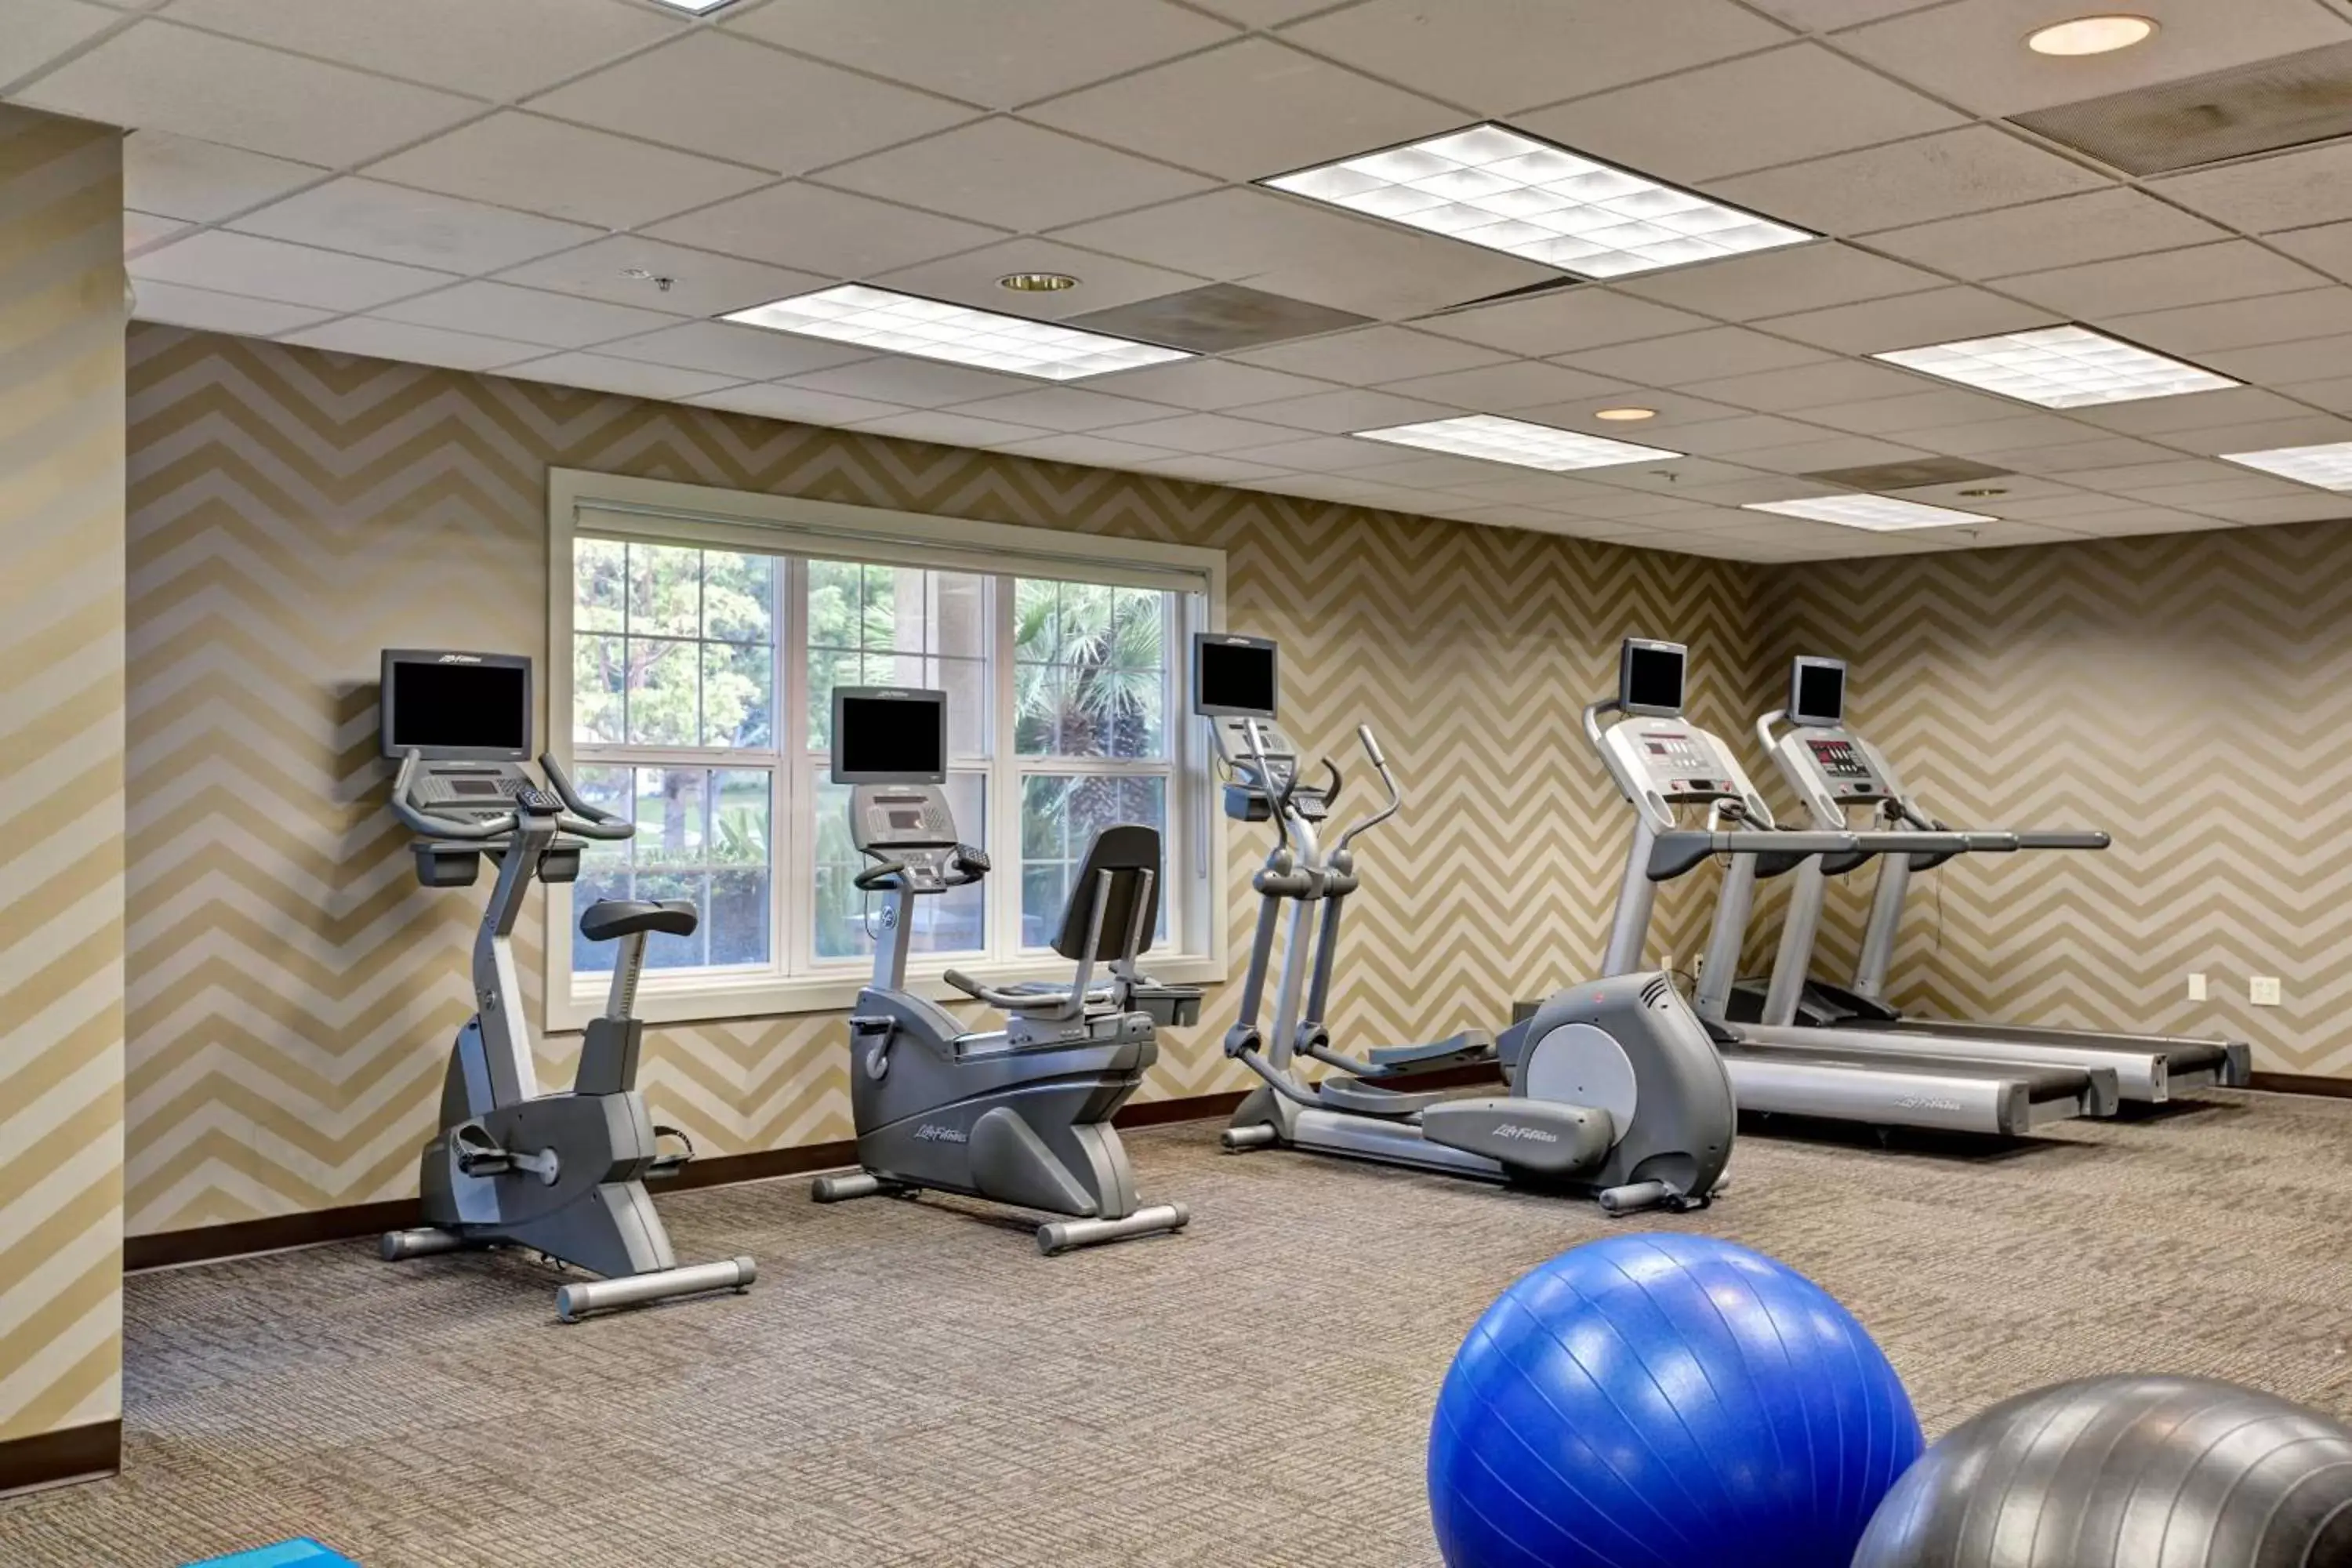 Fitness centre/facilities, Fitness Center/Facilities in Residence Inn Los Angeles LAX/El Segundo